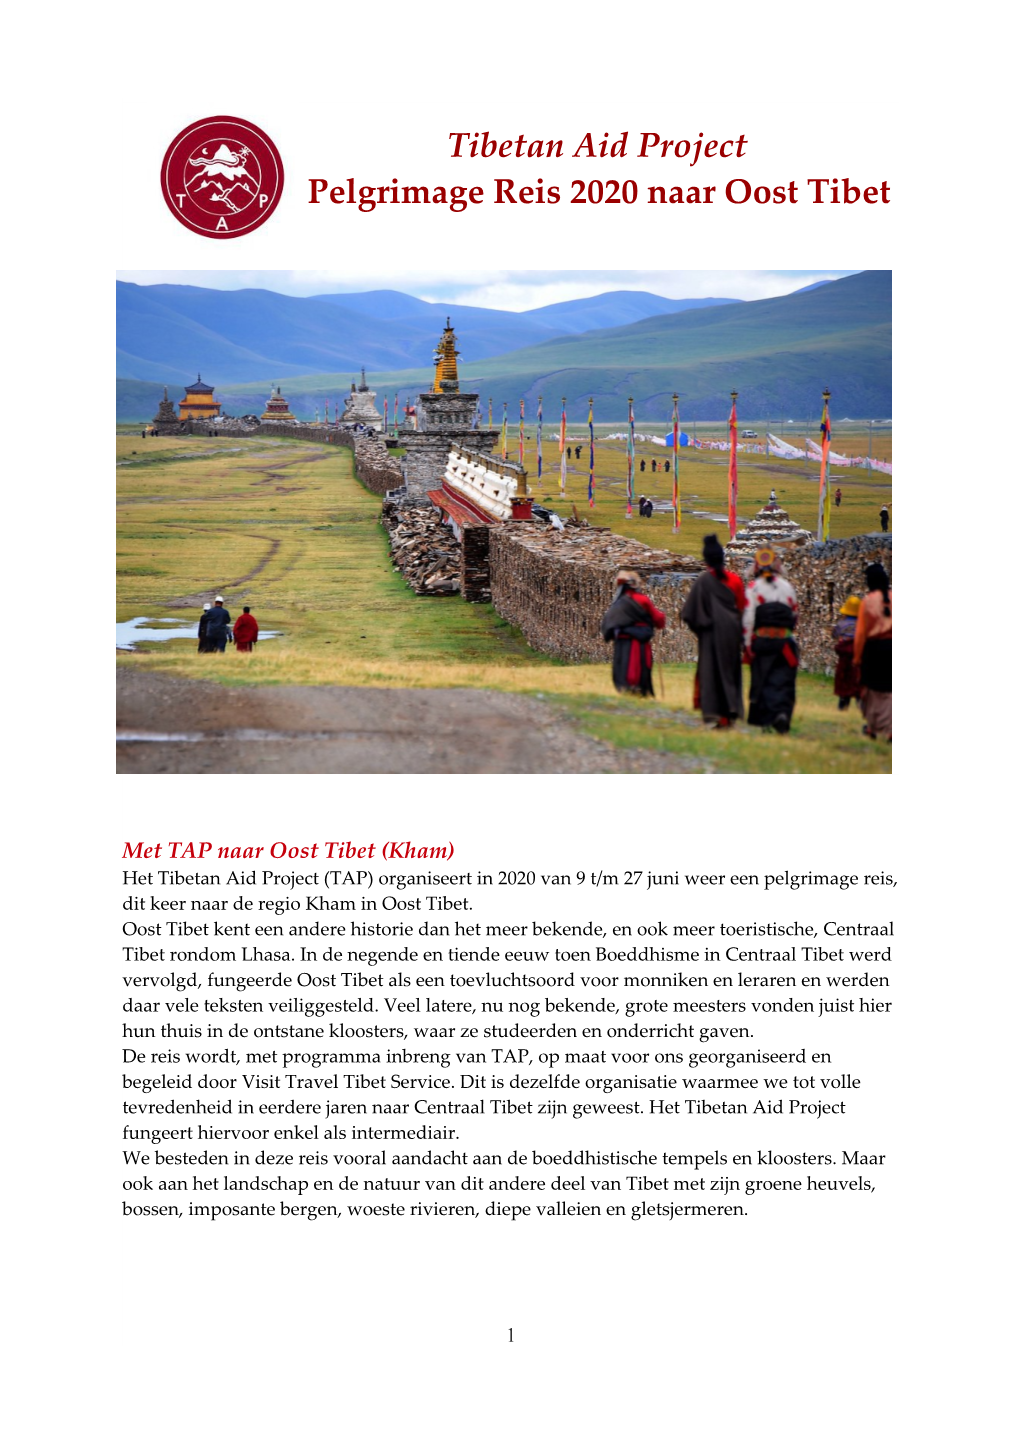 Tibetan Aid Project Pelgrimage Reis 2020 Naar Oost Tibet